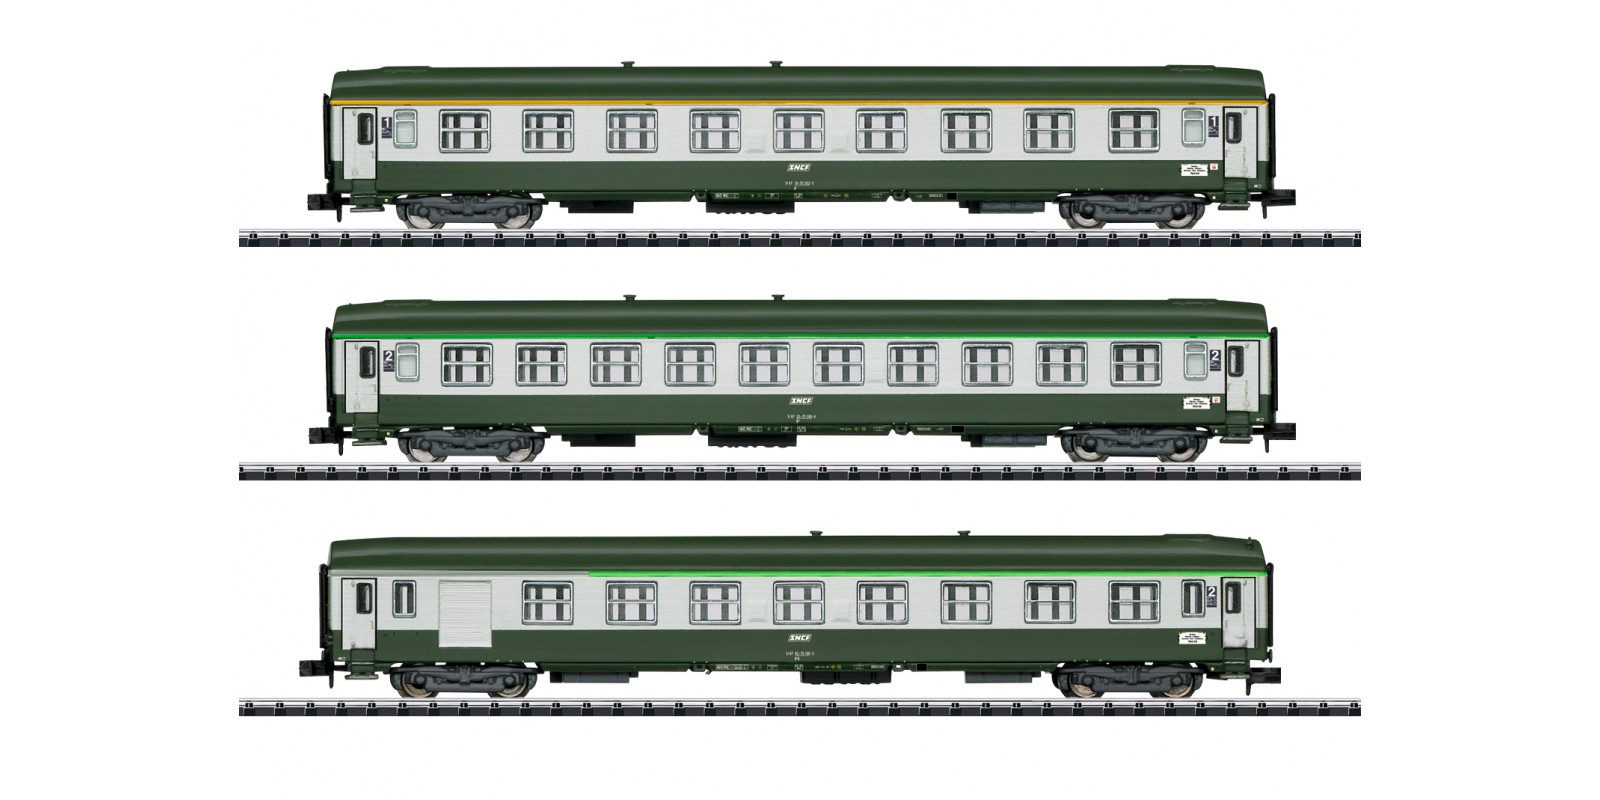 T15372 "Orient Express" Express Train Passenger Car Set